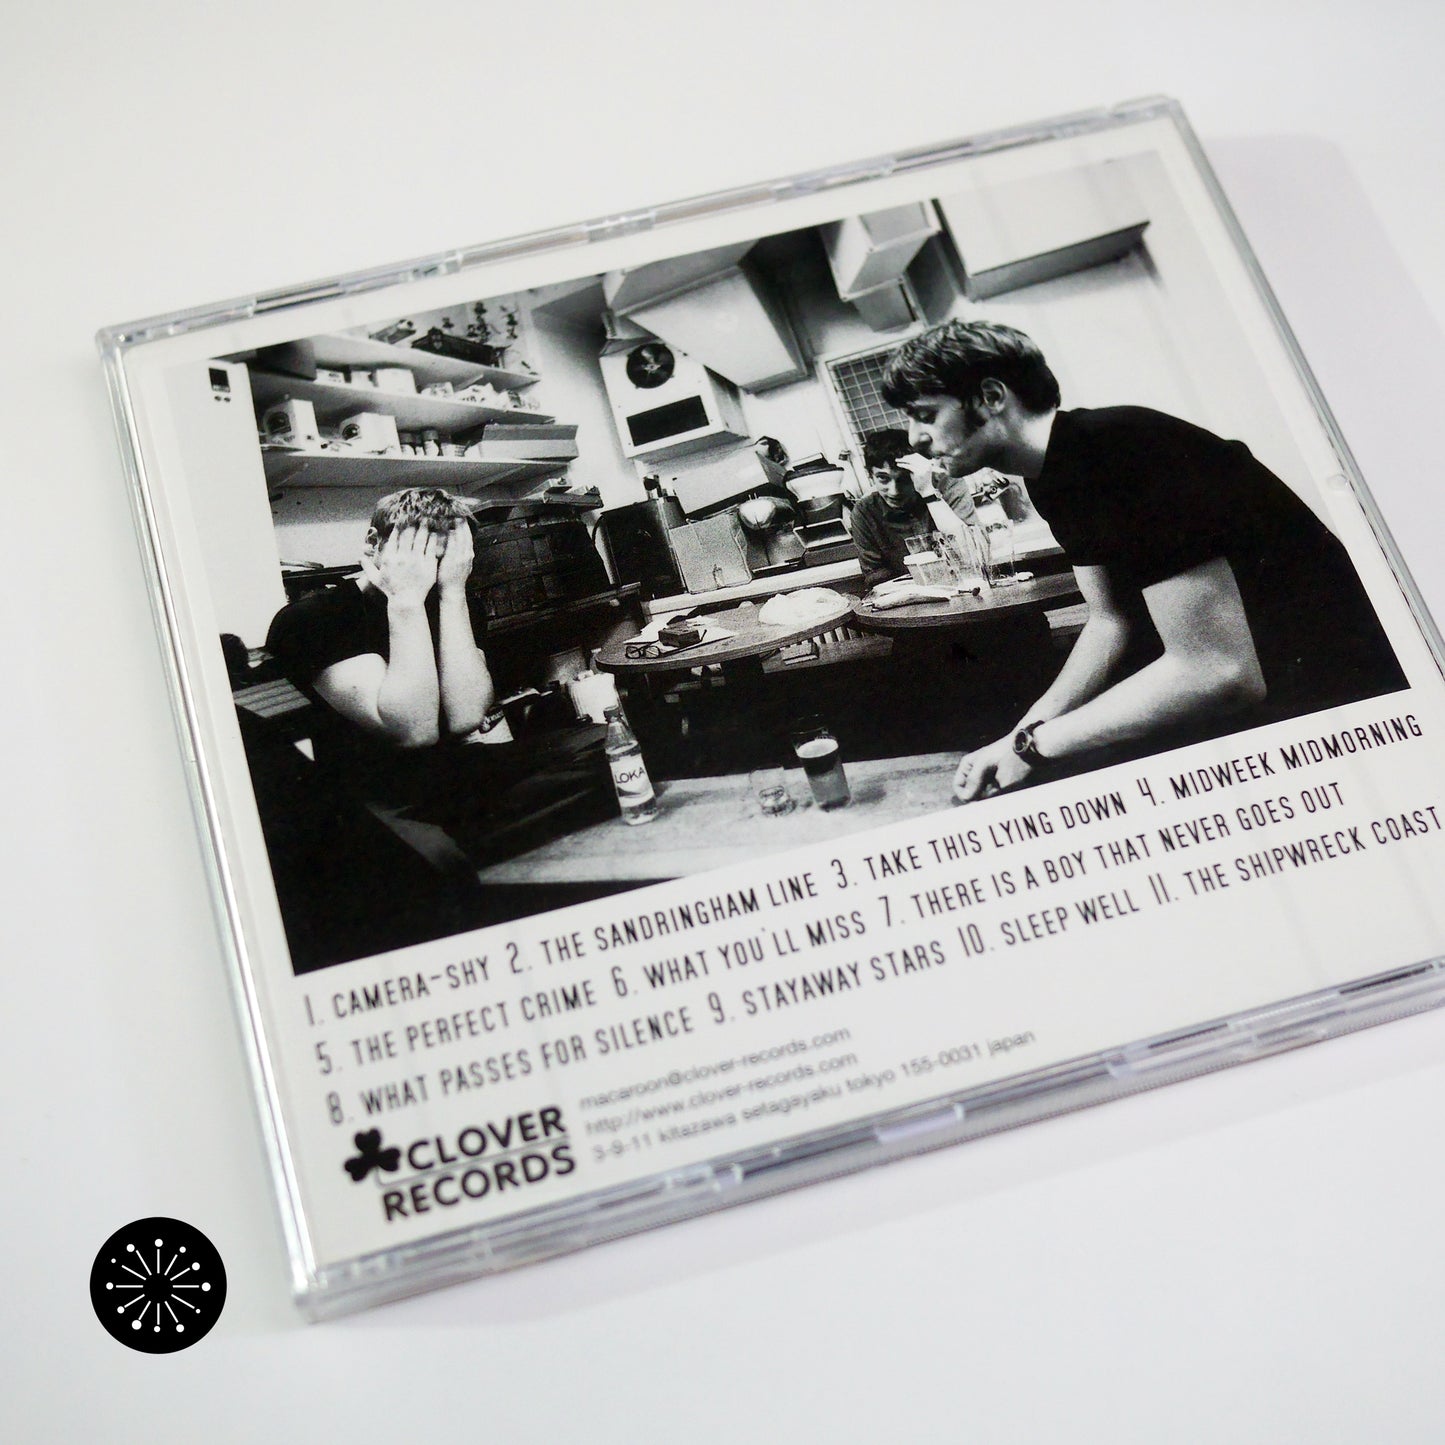 Lucksmiths - Naturaliste (CD)